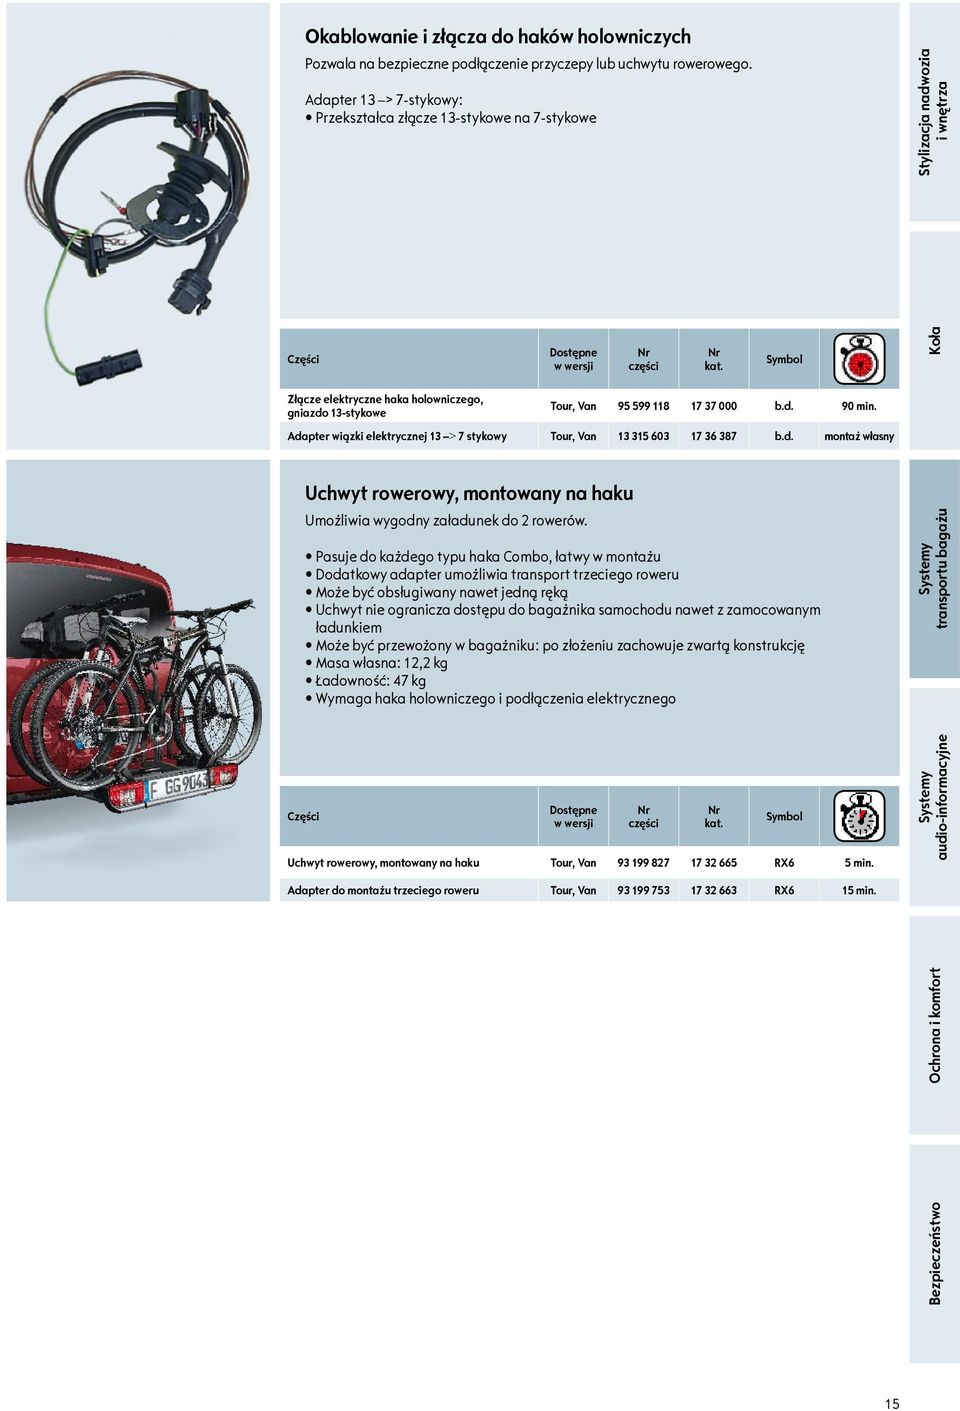 Adapter wiązki elektrycznej 3 > 7 stykowy Tour, Van 3 35 603 7 36 387 b.d. Uchwyt rowerowy, montowany na haku Umożliwia wygodny załadunek do 2 rowerów.